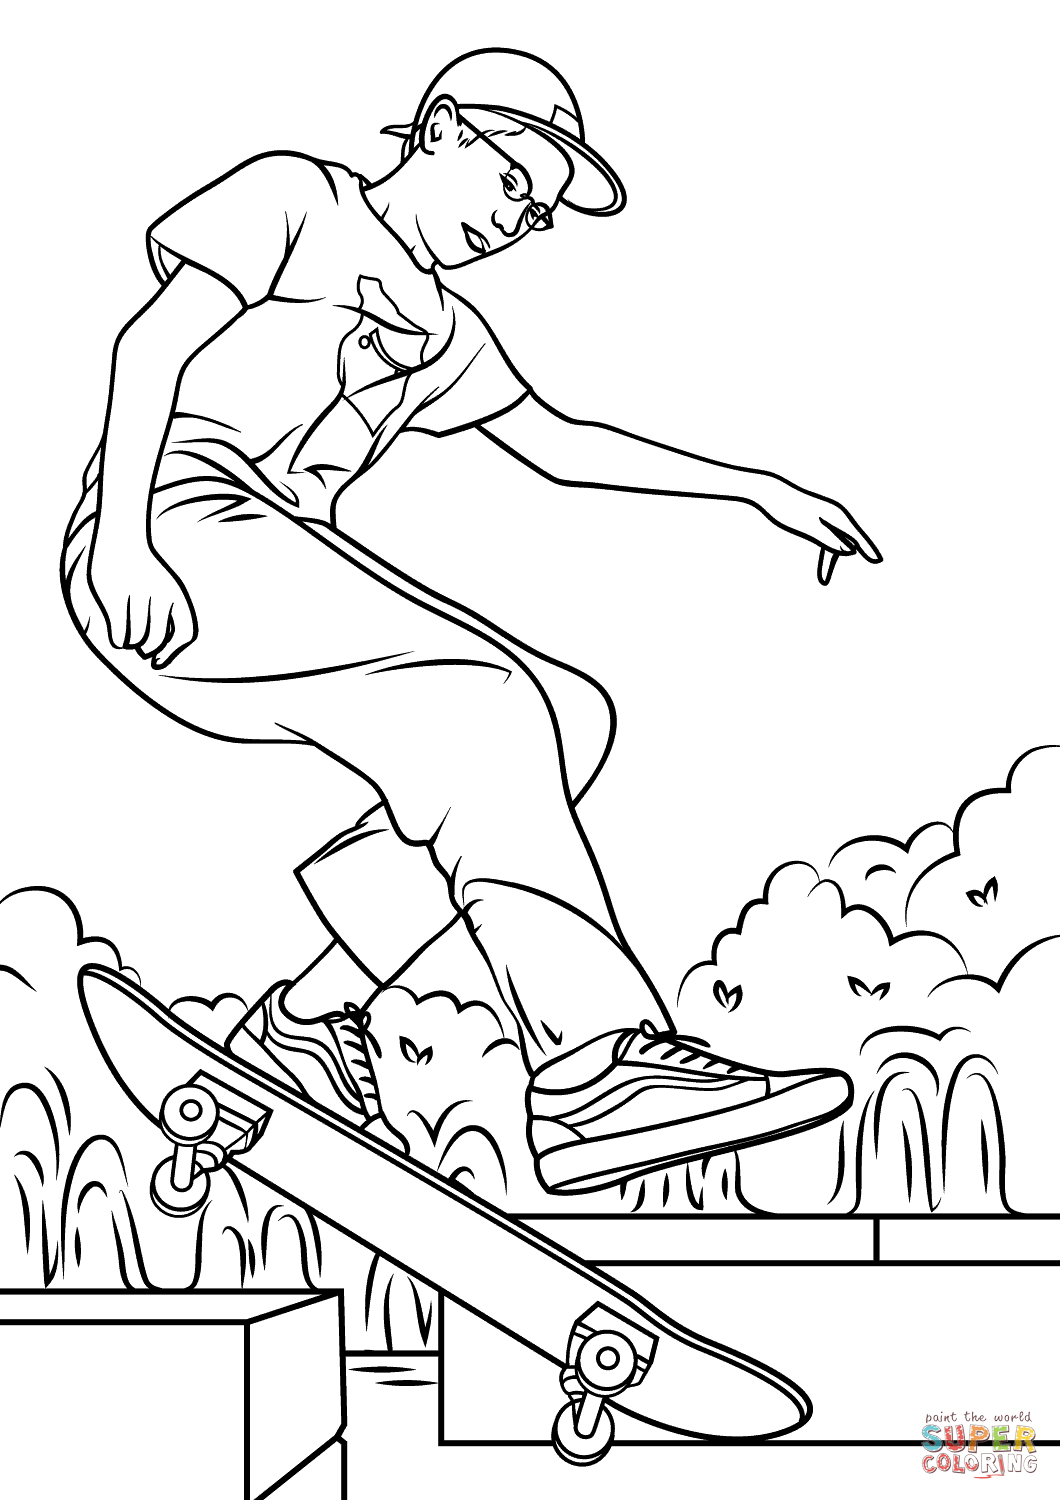 Desenho De Desenho De Homem A Andar De Skate Para Colorir Desenhos ...